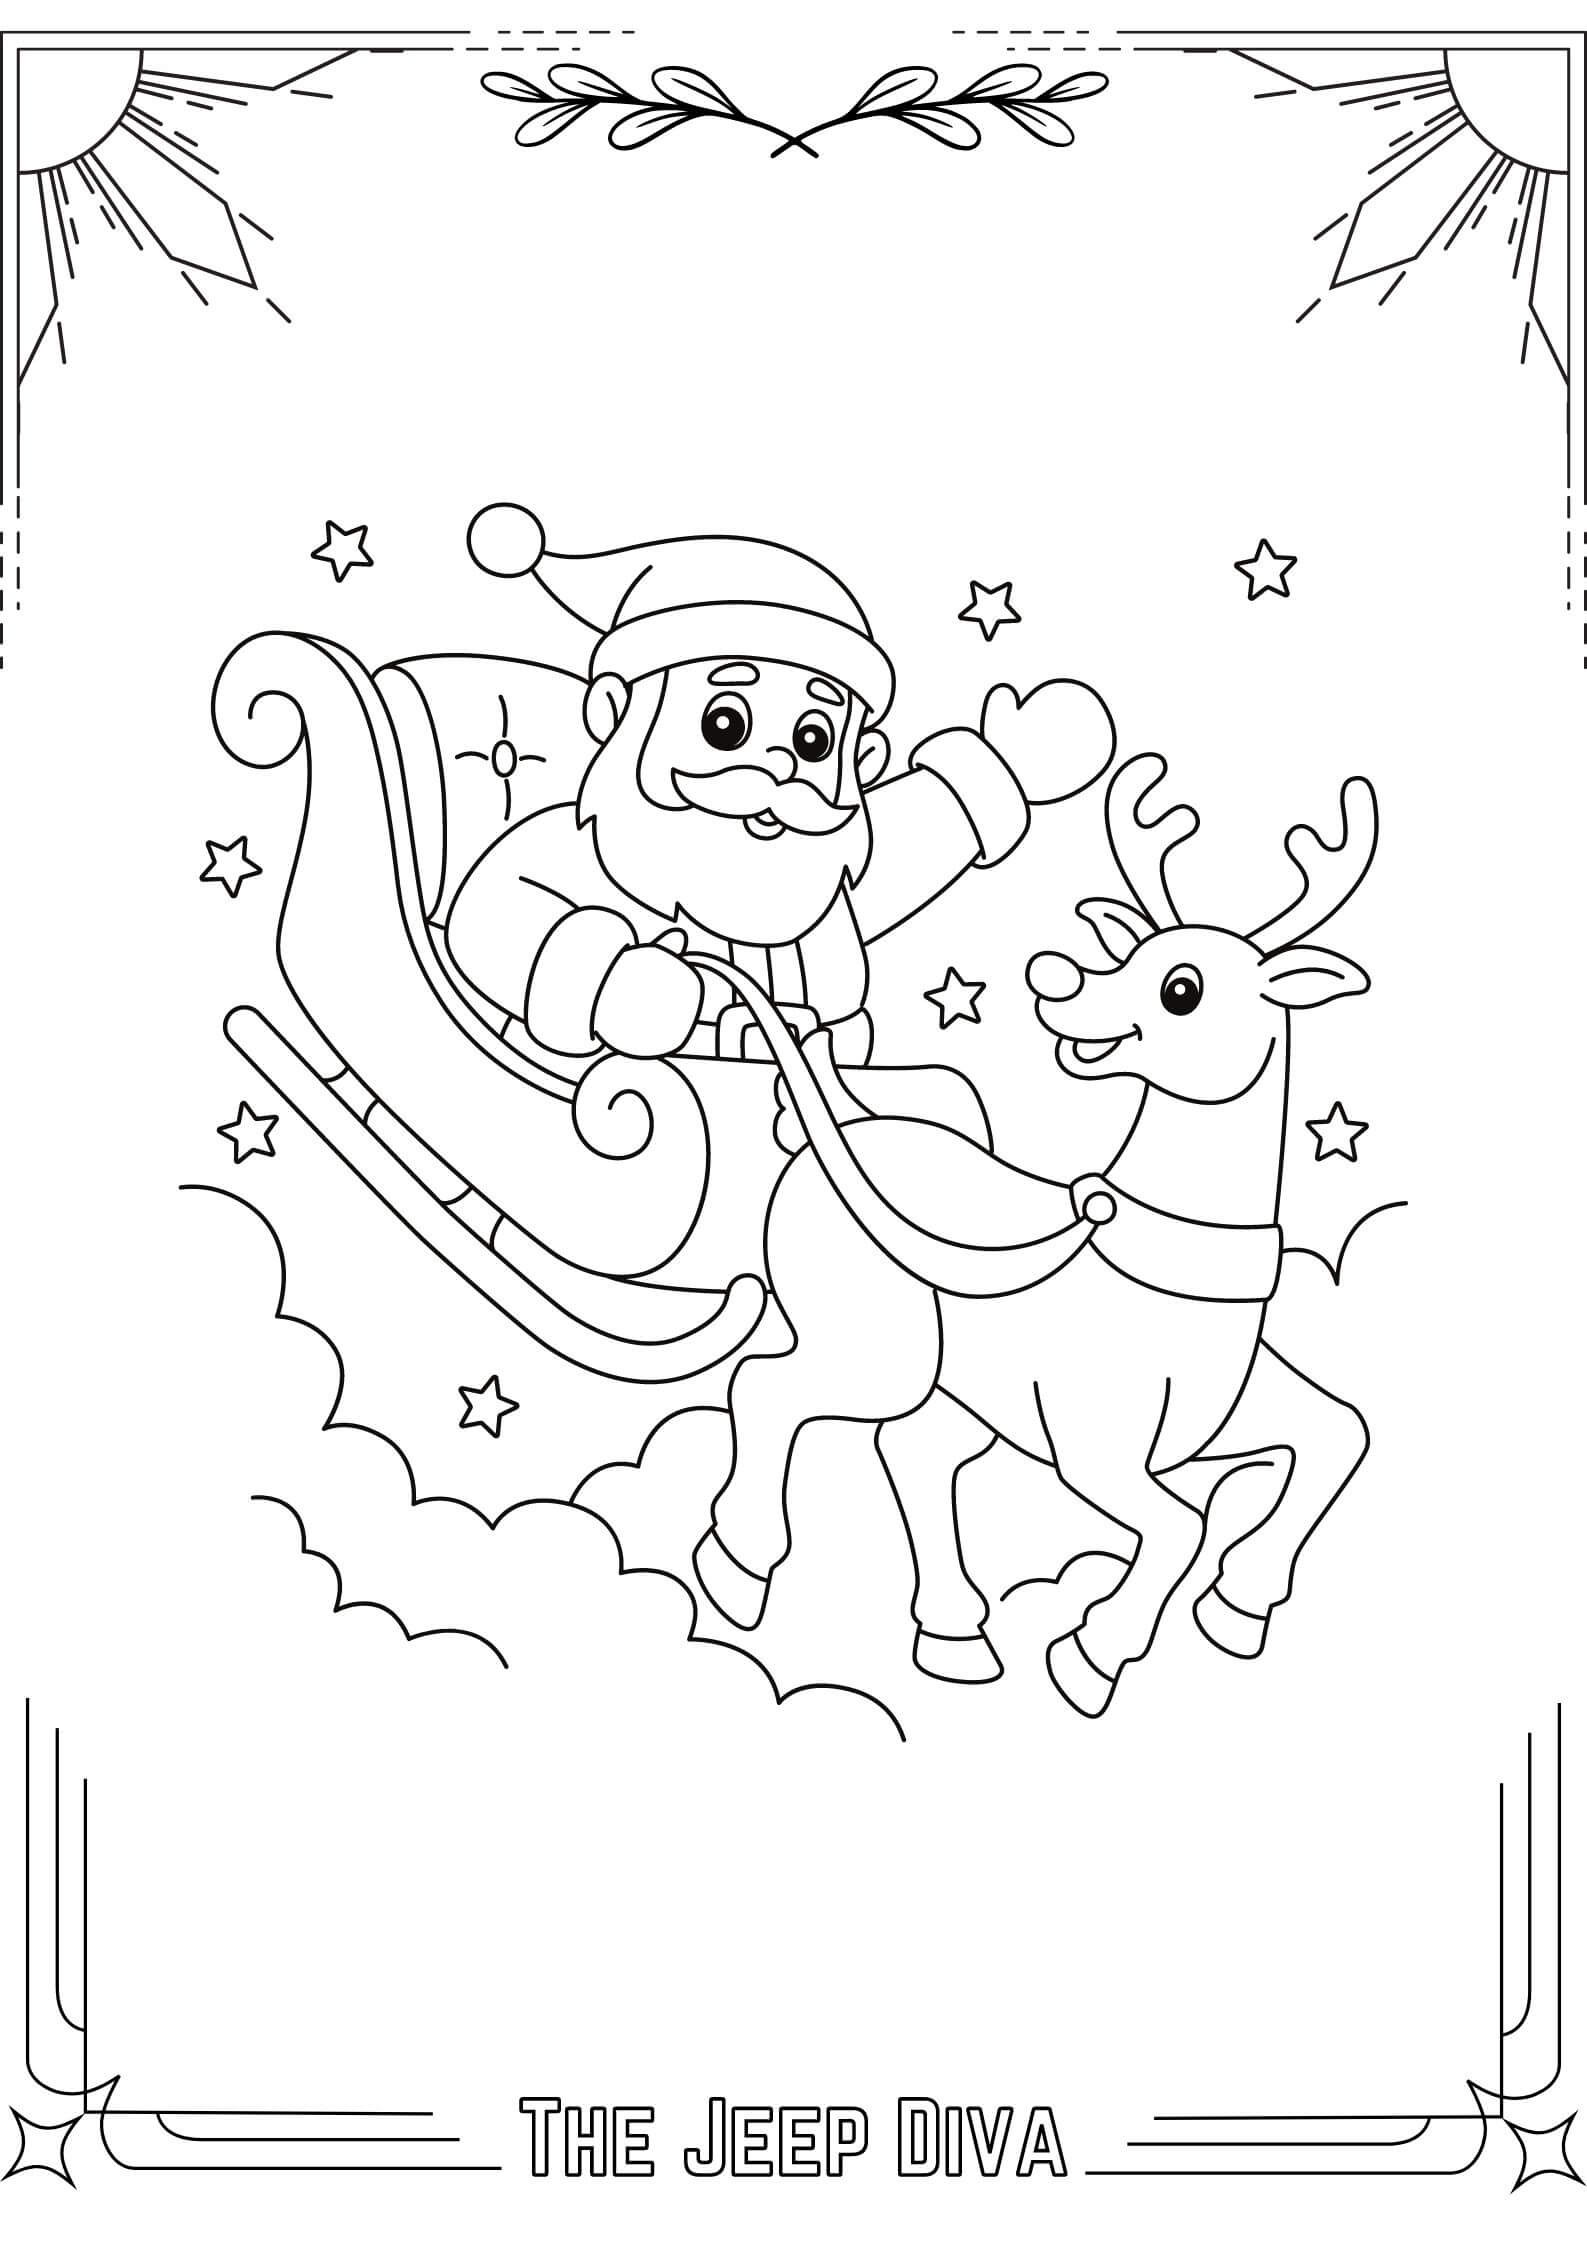 TheJeepDiva Coloring Page Santa 17